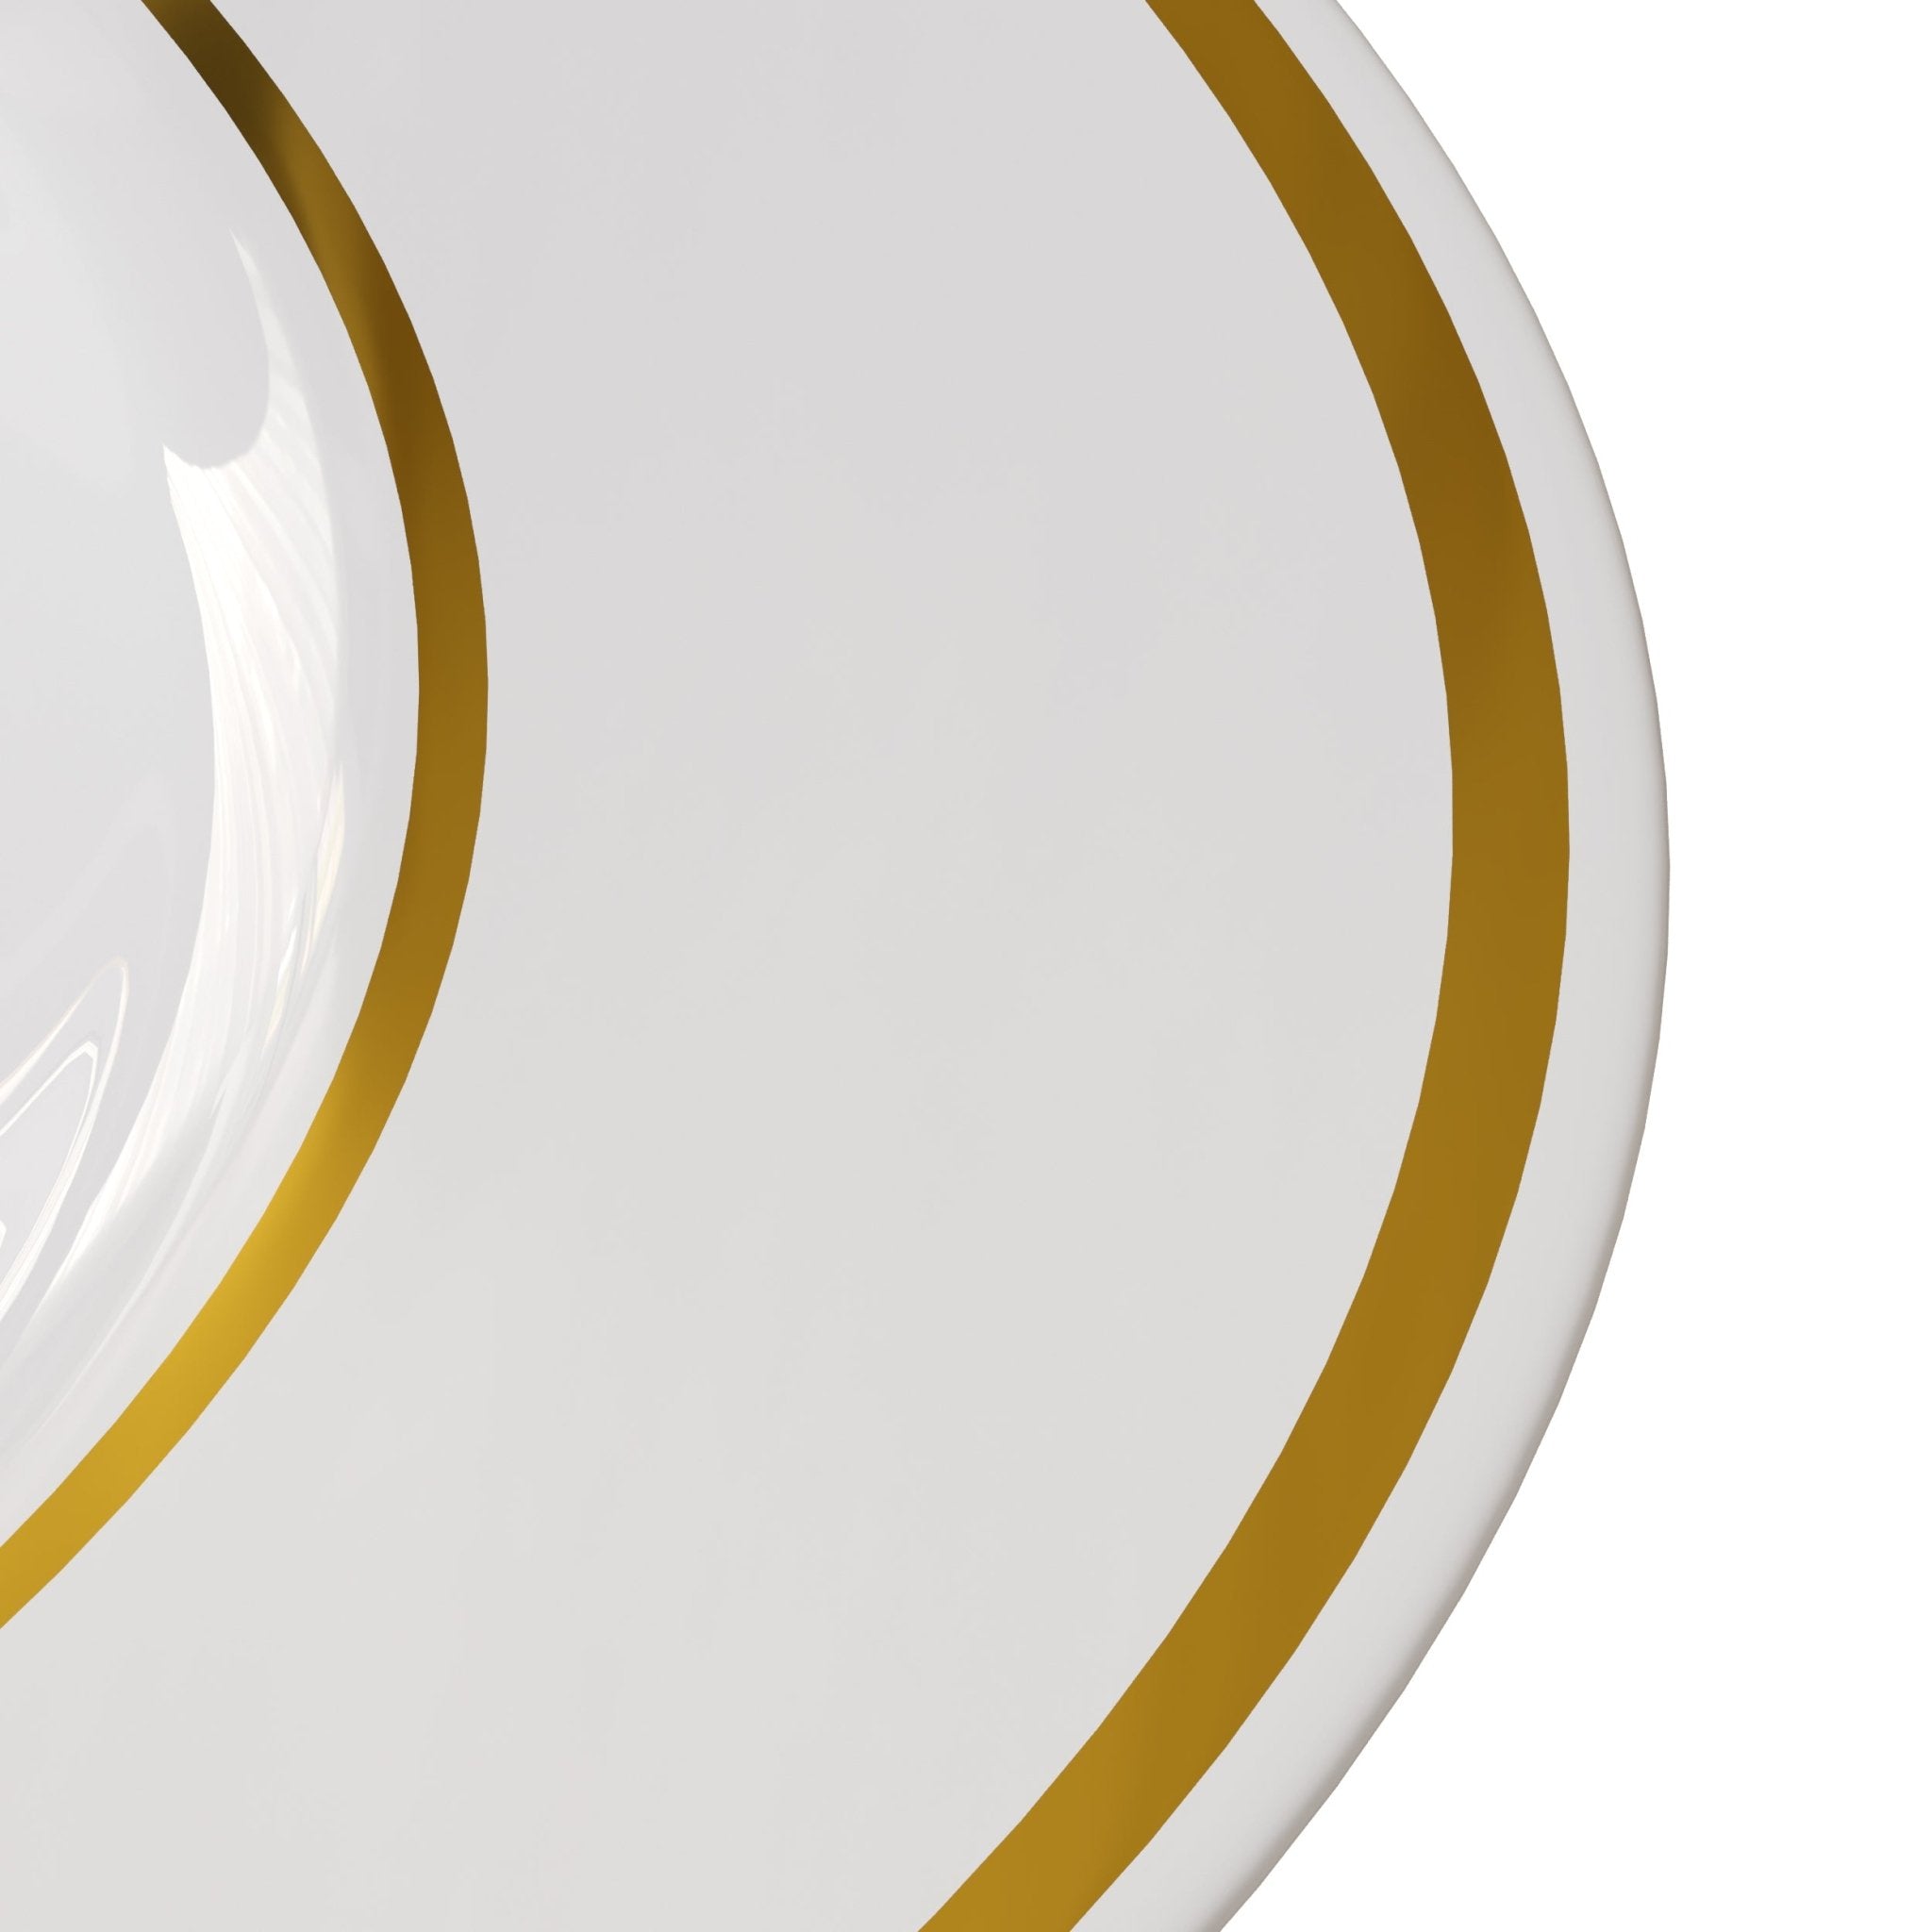 10.25" Cream/Gold Line Design Plastic Plates (120 Count)